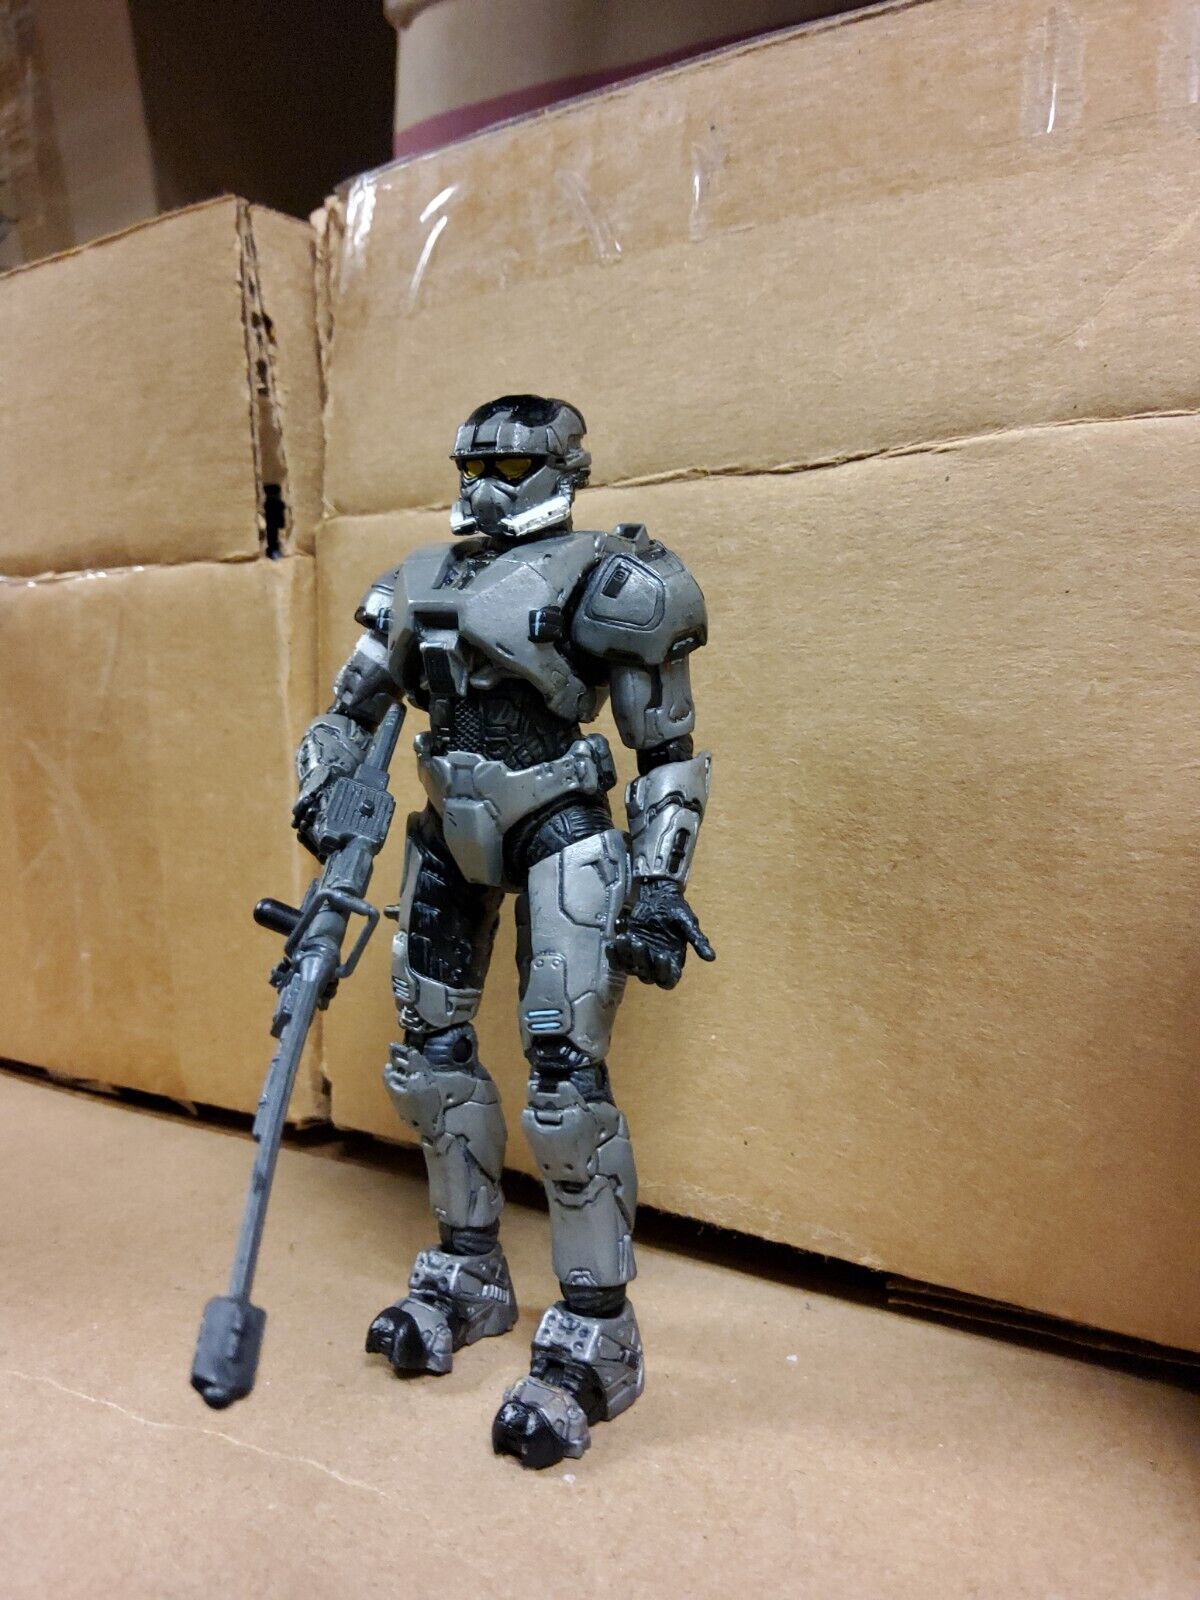 Halo 3 Series 3 Spartan Soldier EOD Figure GameStop McFarlane